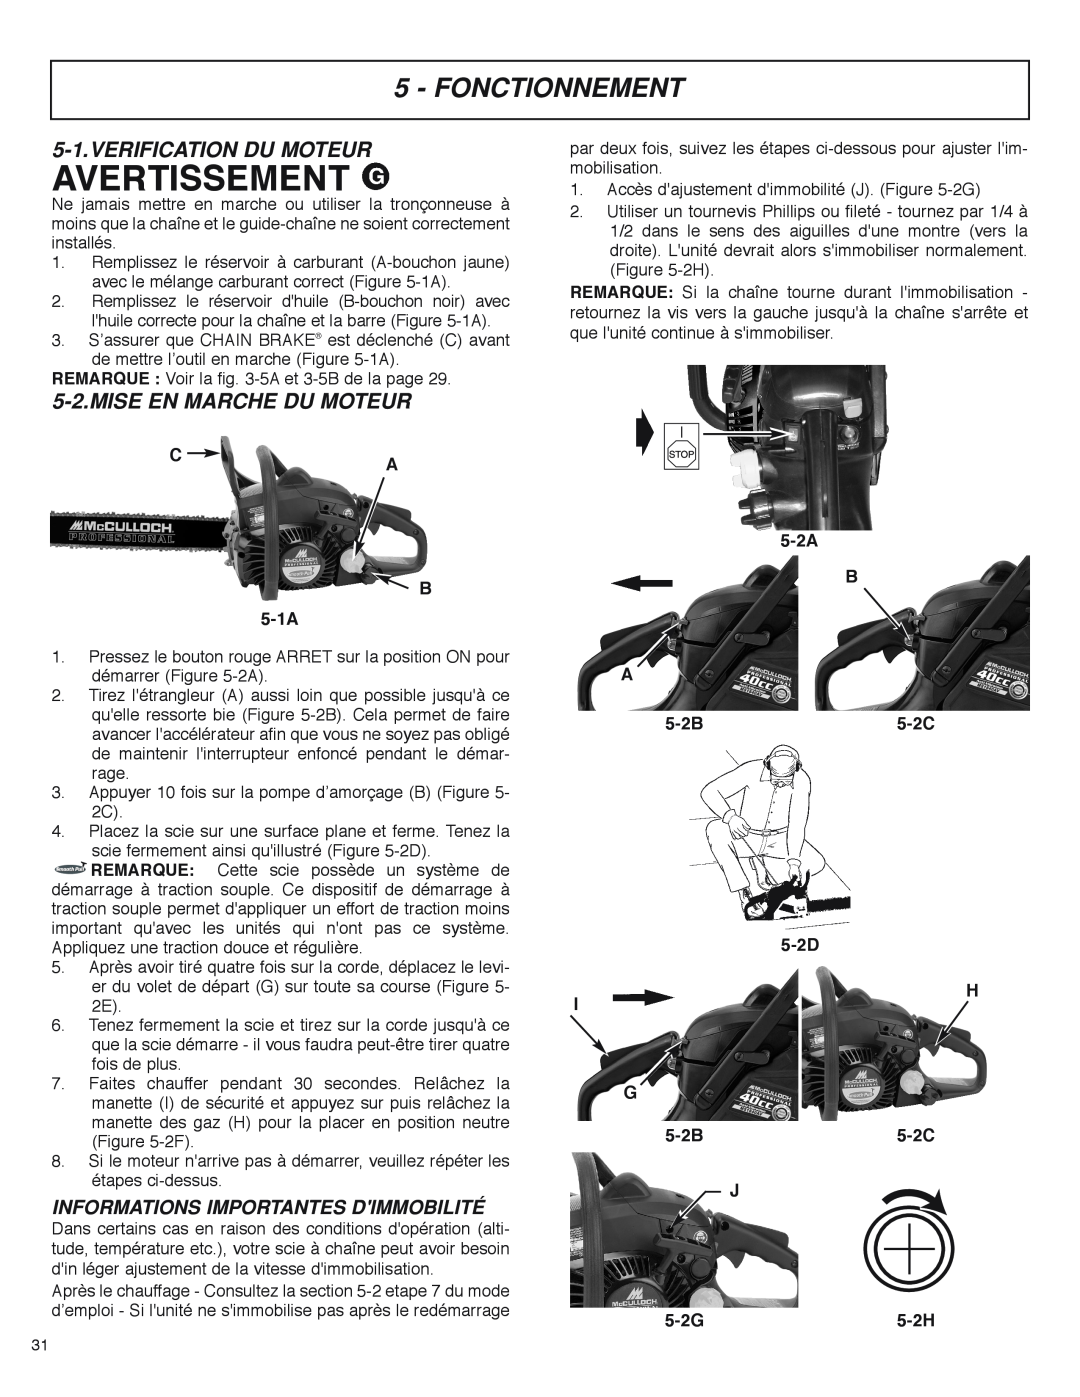 McCulloch MS4016PAVCC, MS4018PAVCC user manual Fonctionnement, Verification Du Moteur, Mise En Marche Du Moteur, C A B 5-1A 